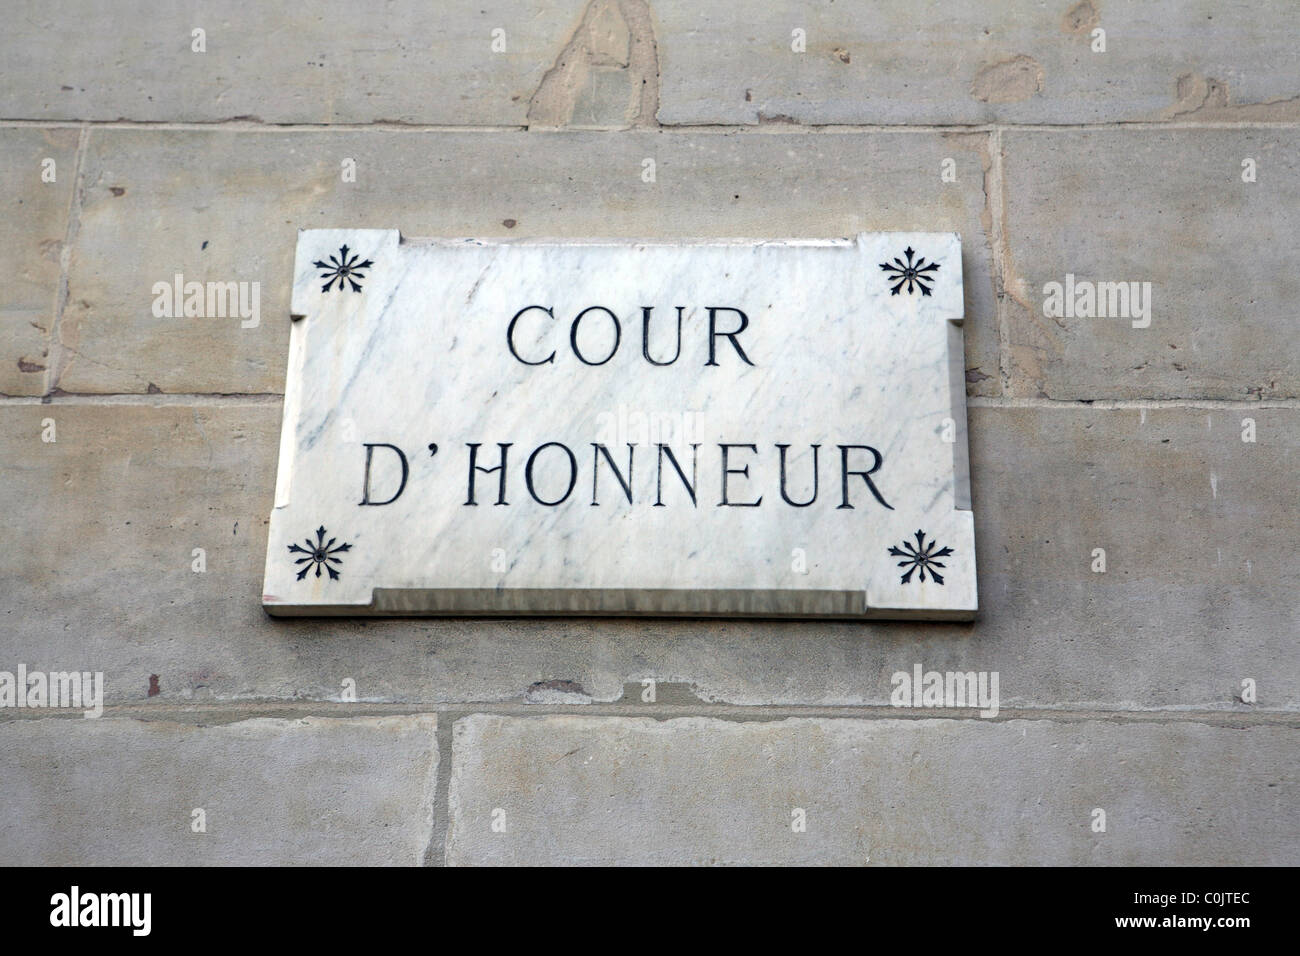 Cour d'honneur court of honour Paris France Stock Photo